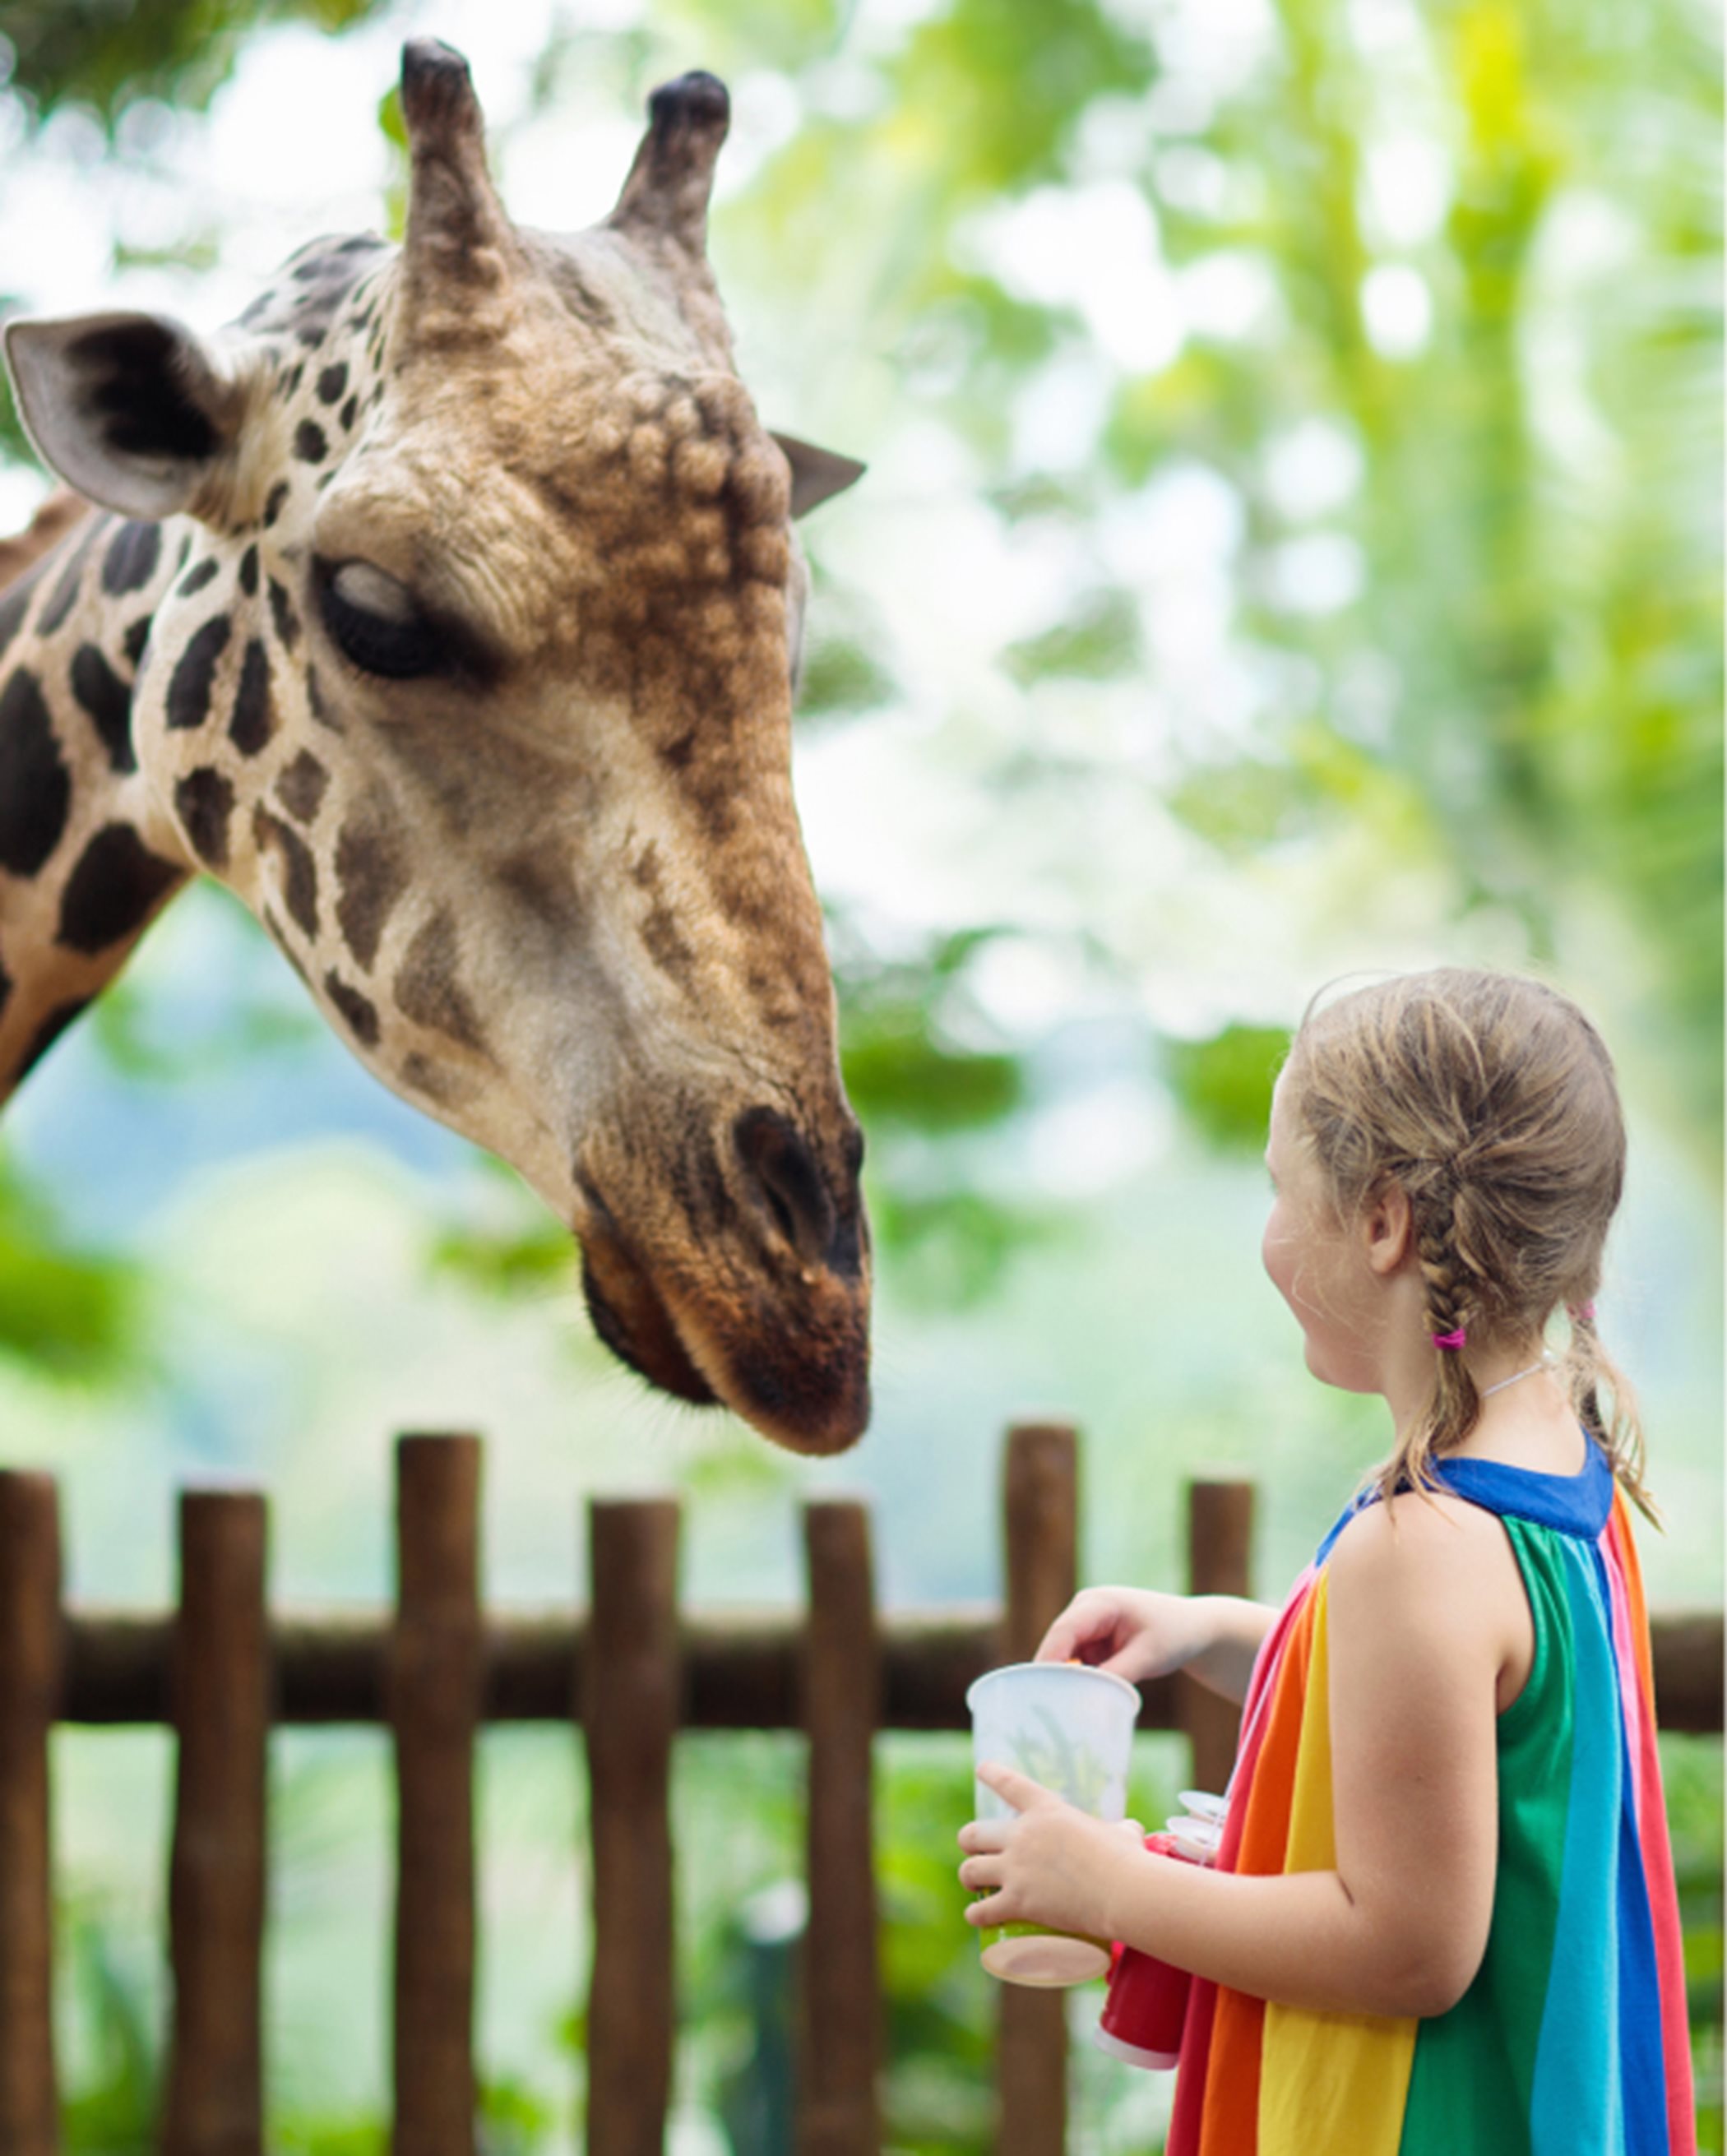 Girl next to a giraffe